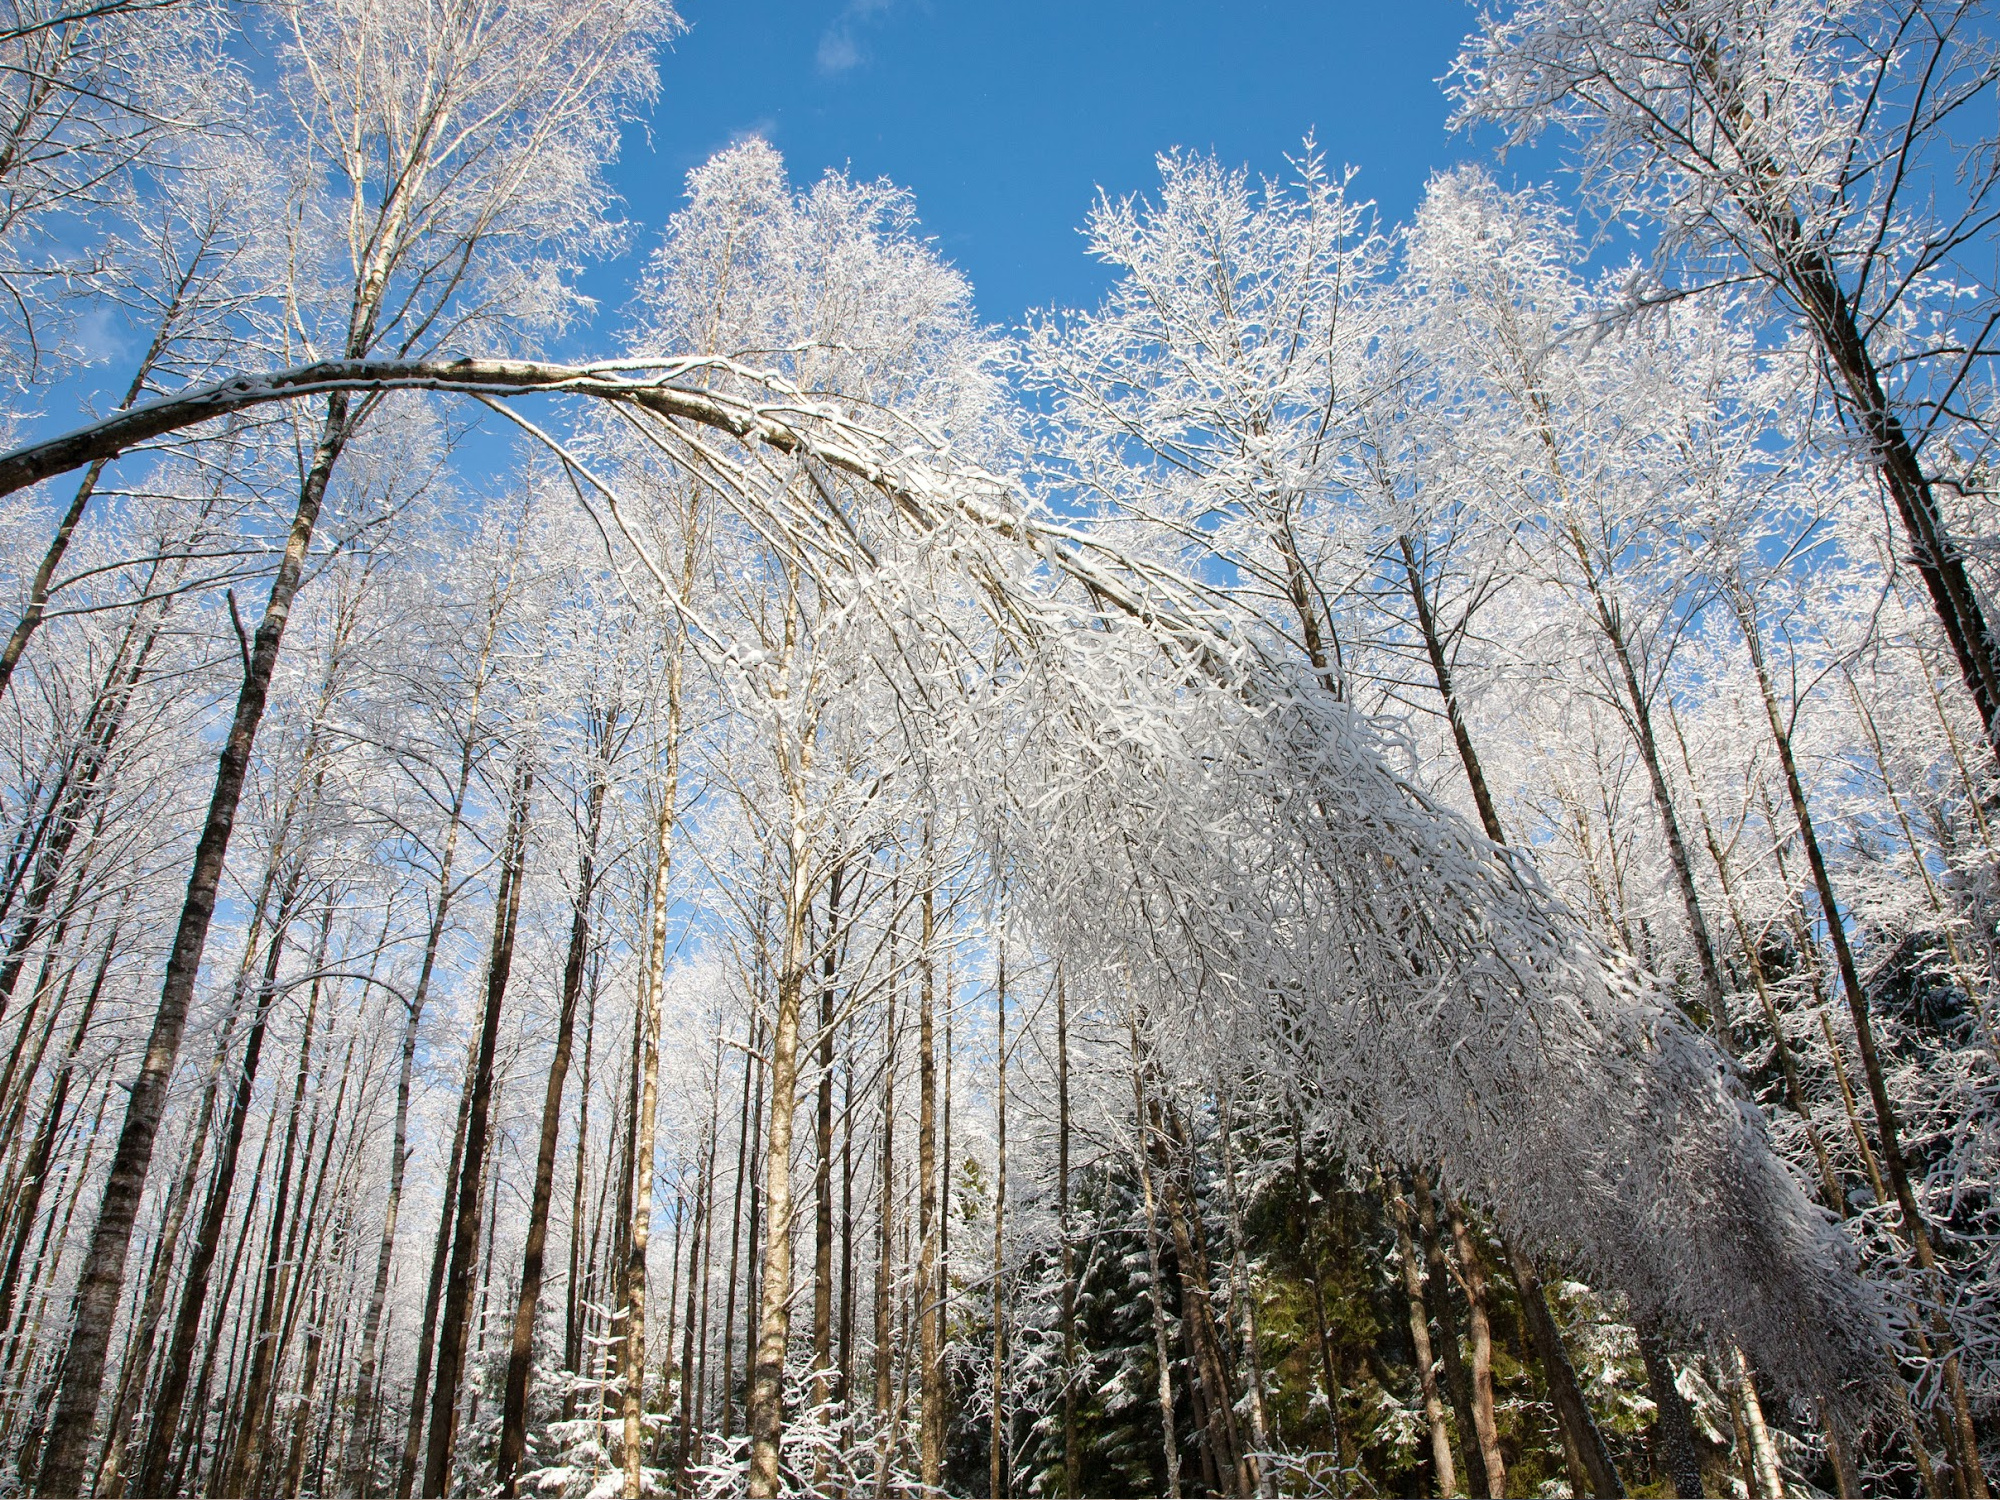 robert frost swinger of birches